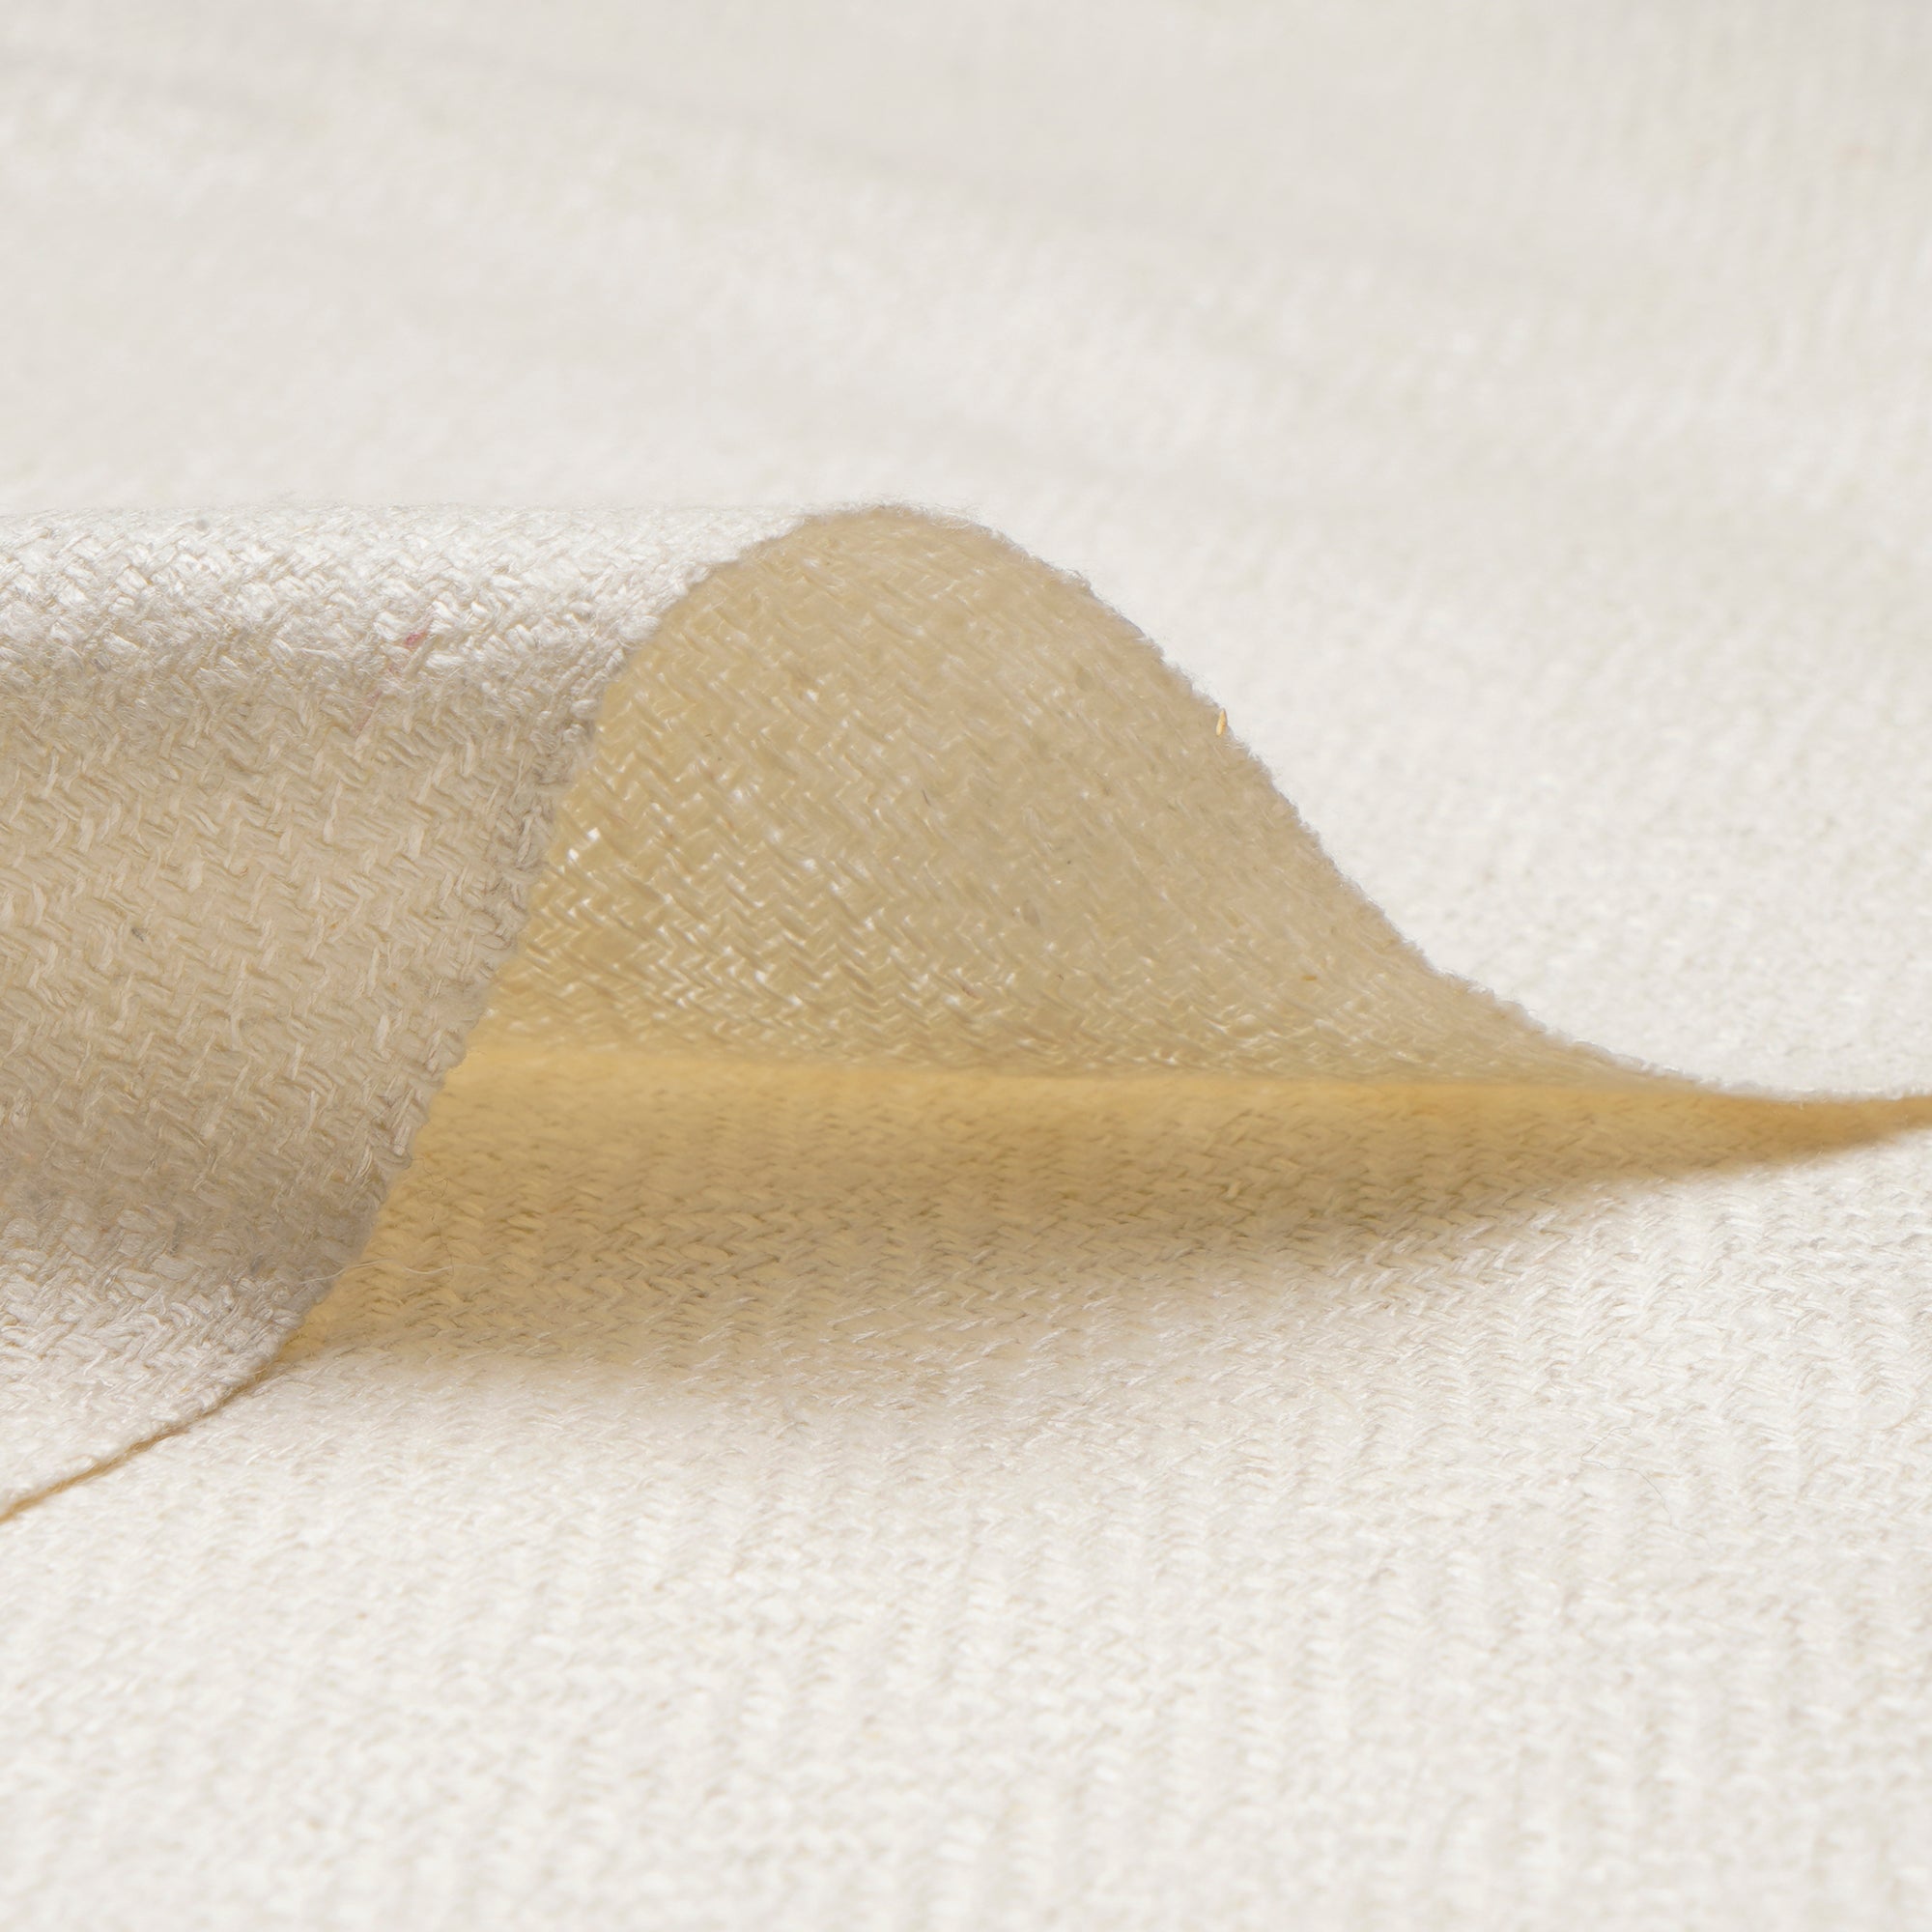 Off-White Dyeable 30x30 Japan Viscose Chiffon Fabric